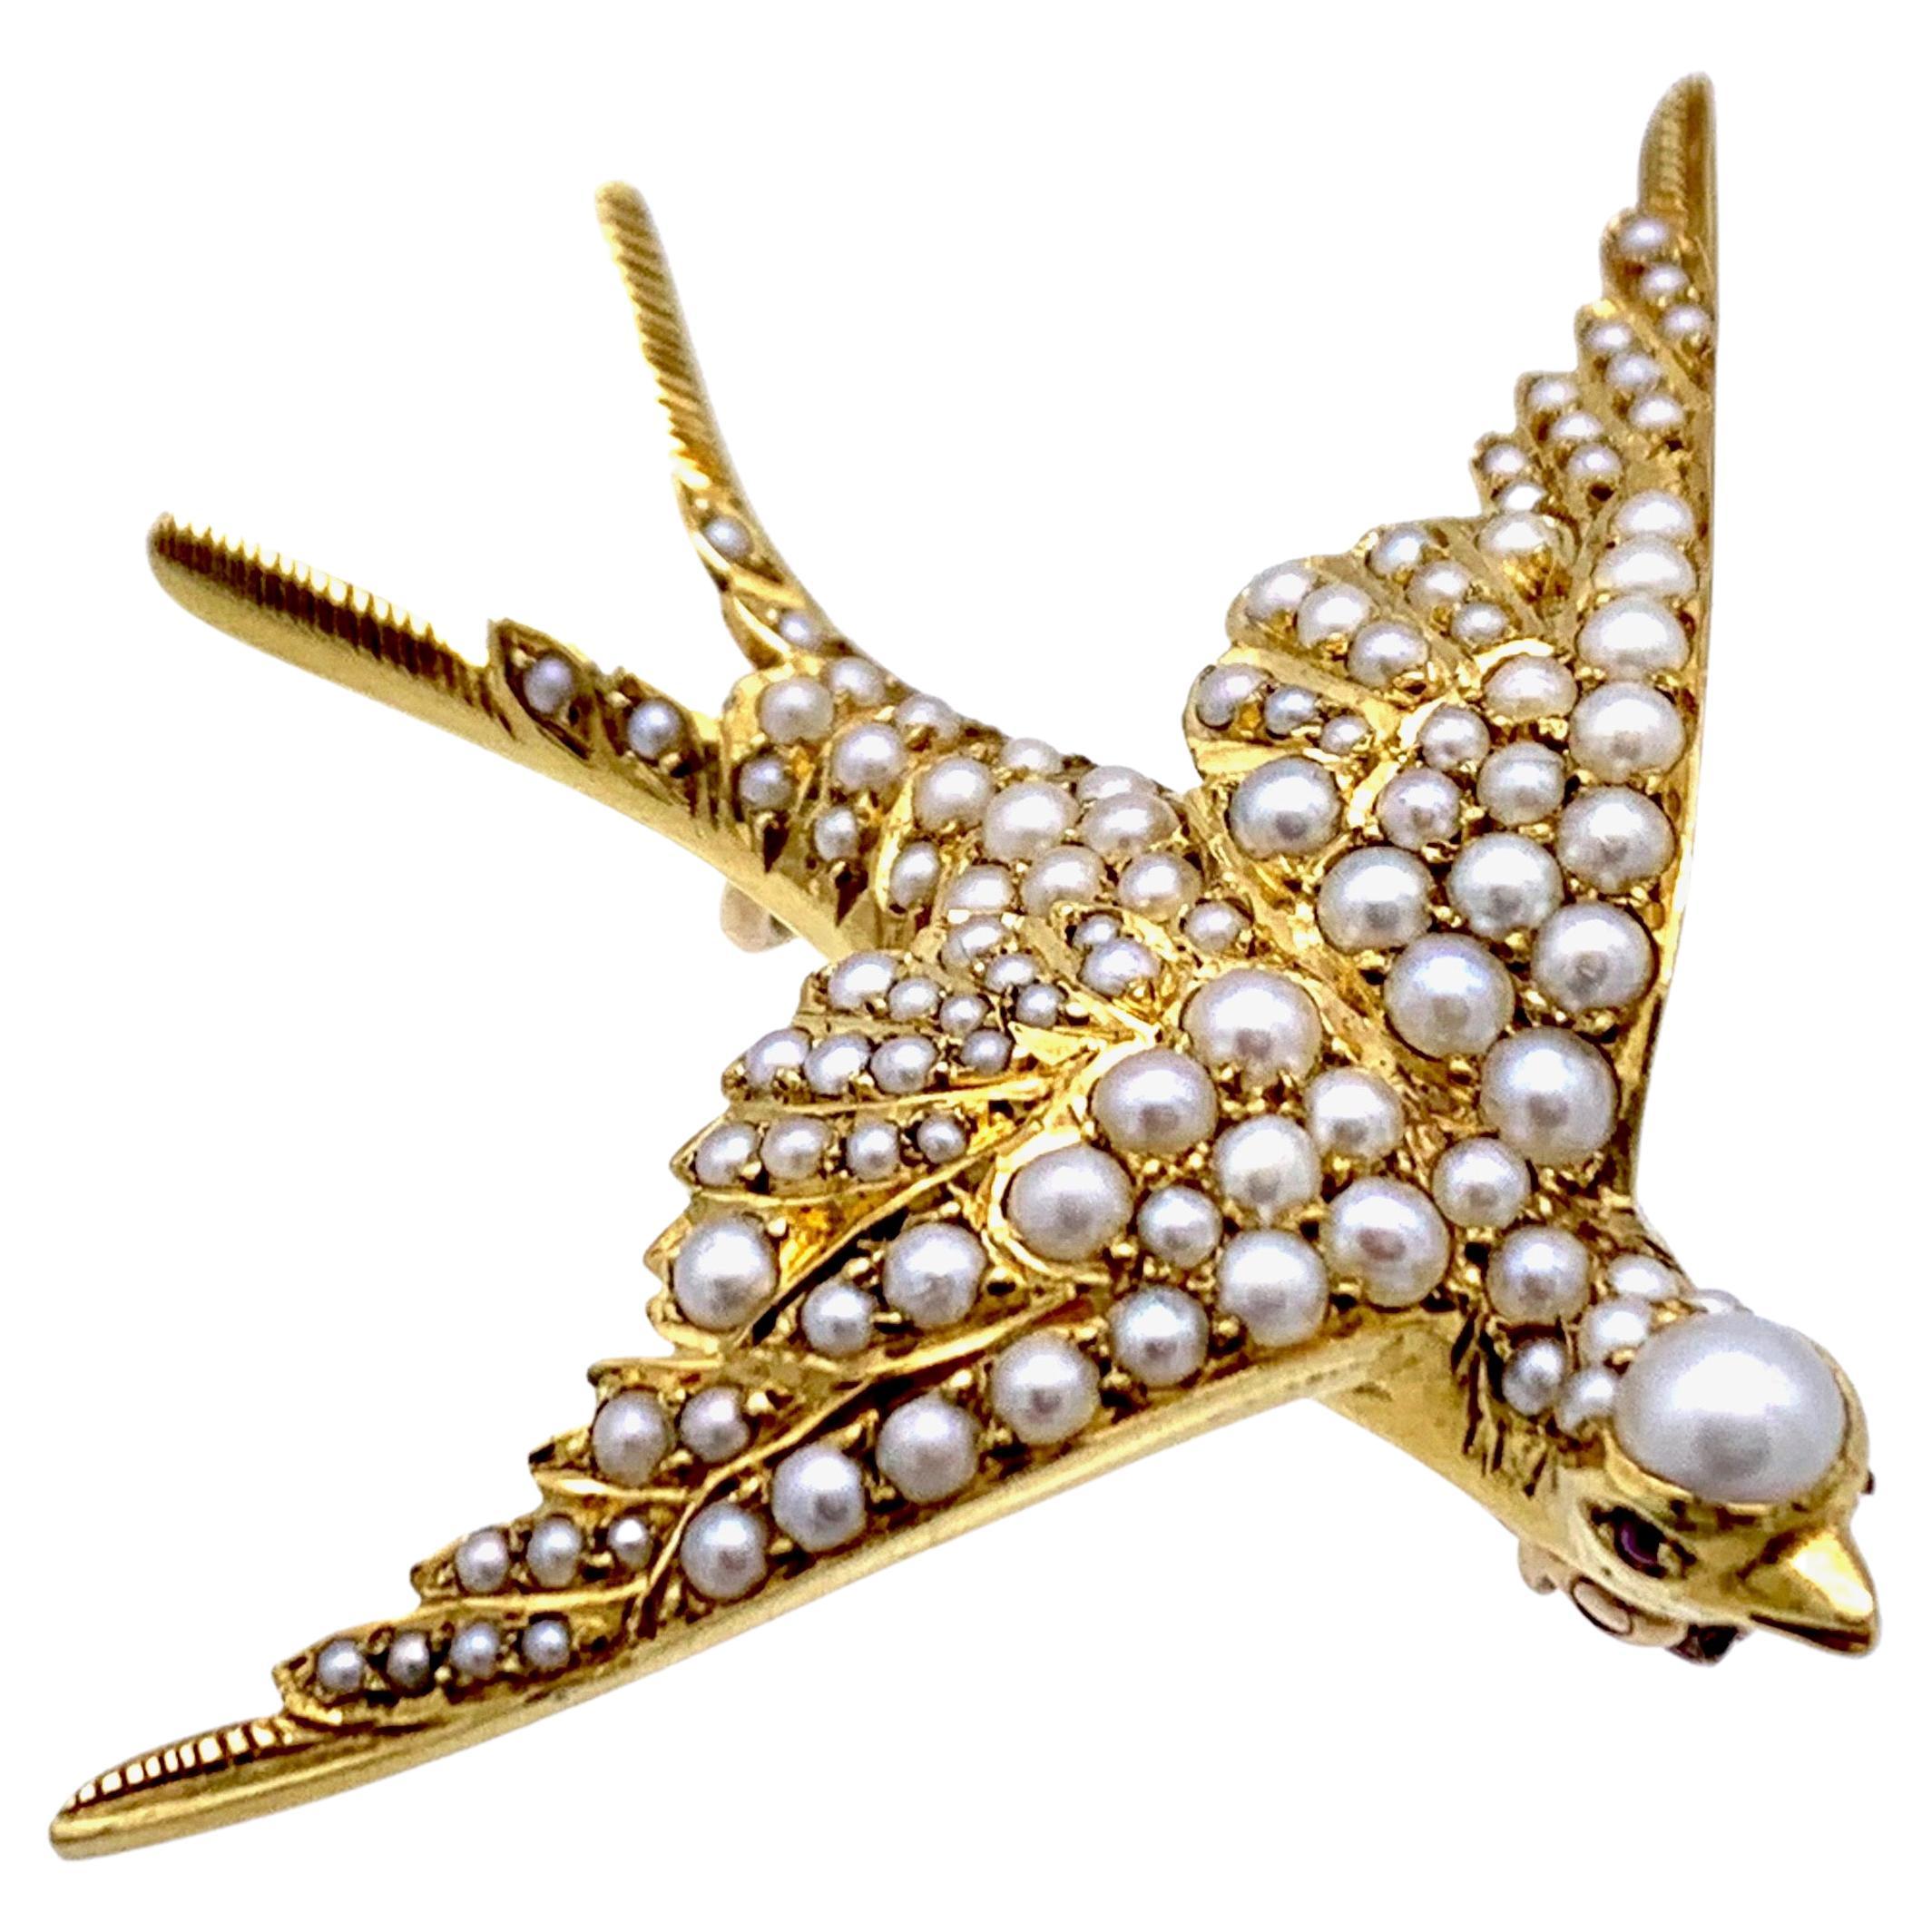 Cette magnifique hirondelle en plein vol a été réalisée à la main en or 14 carats et est entièrement sertie de perles orientales.